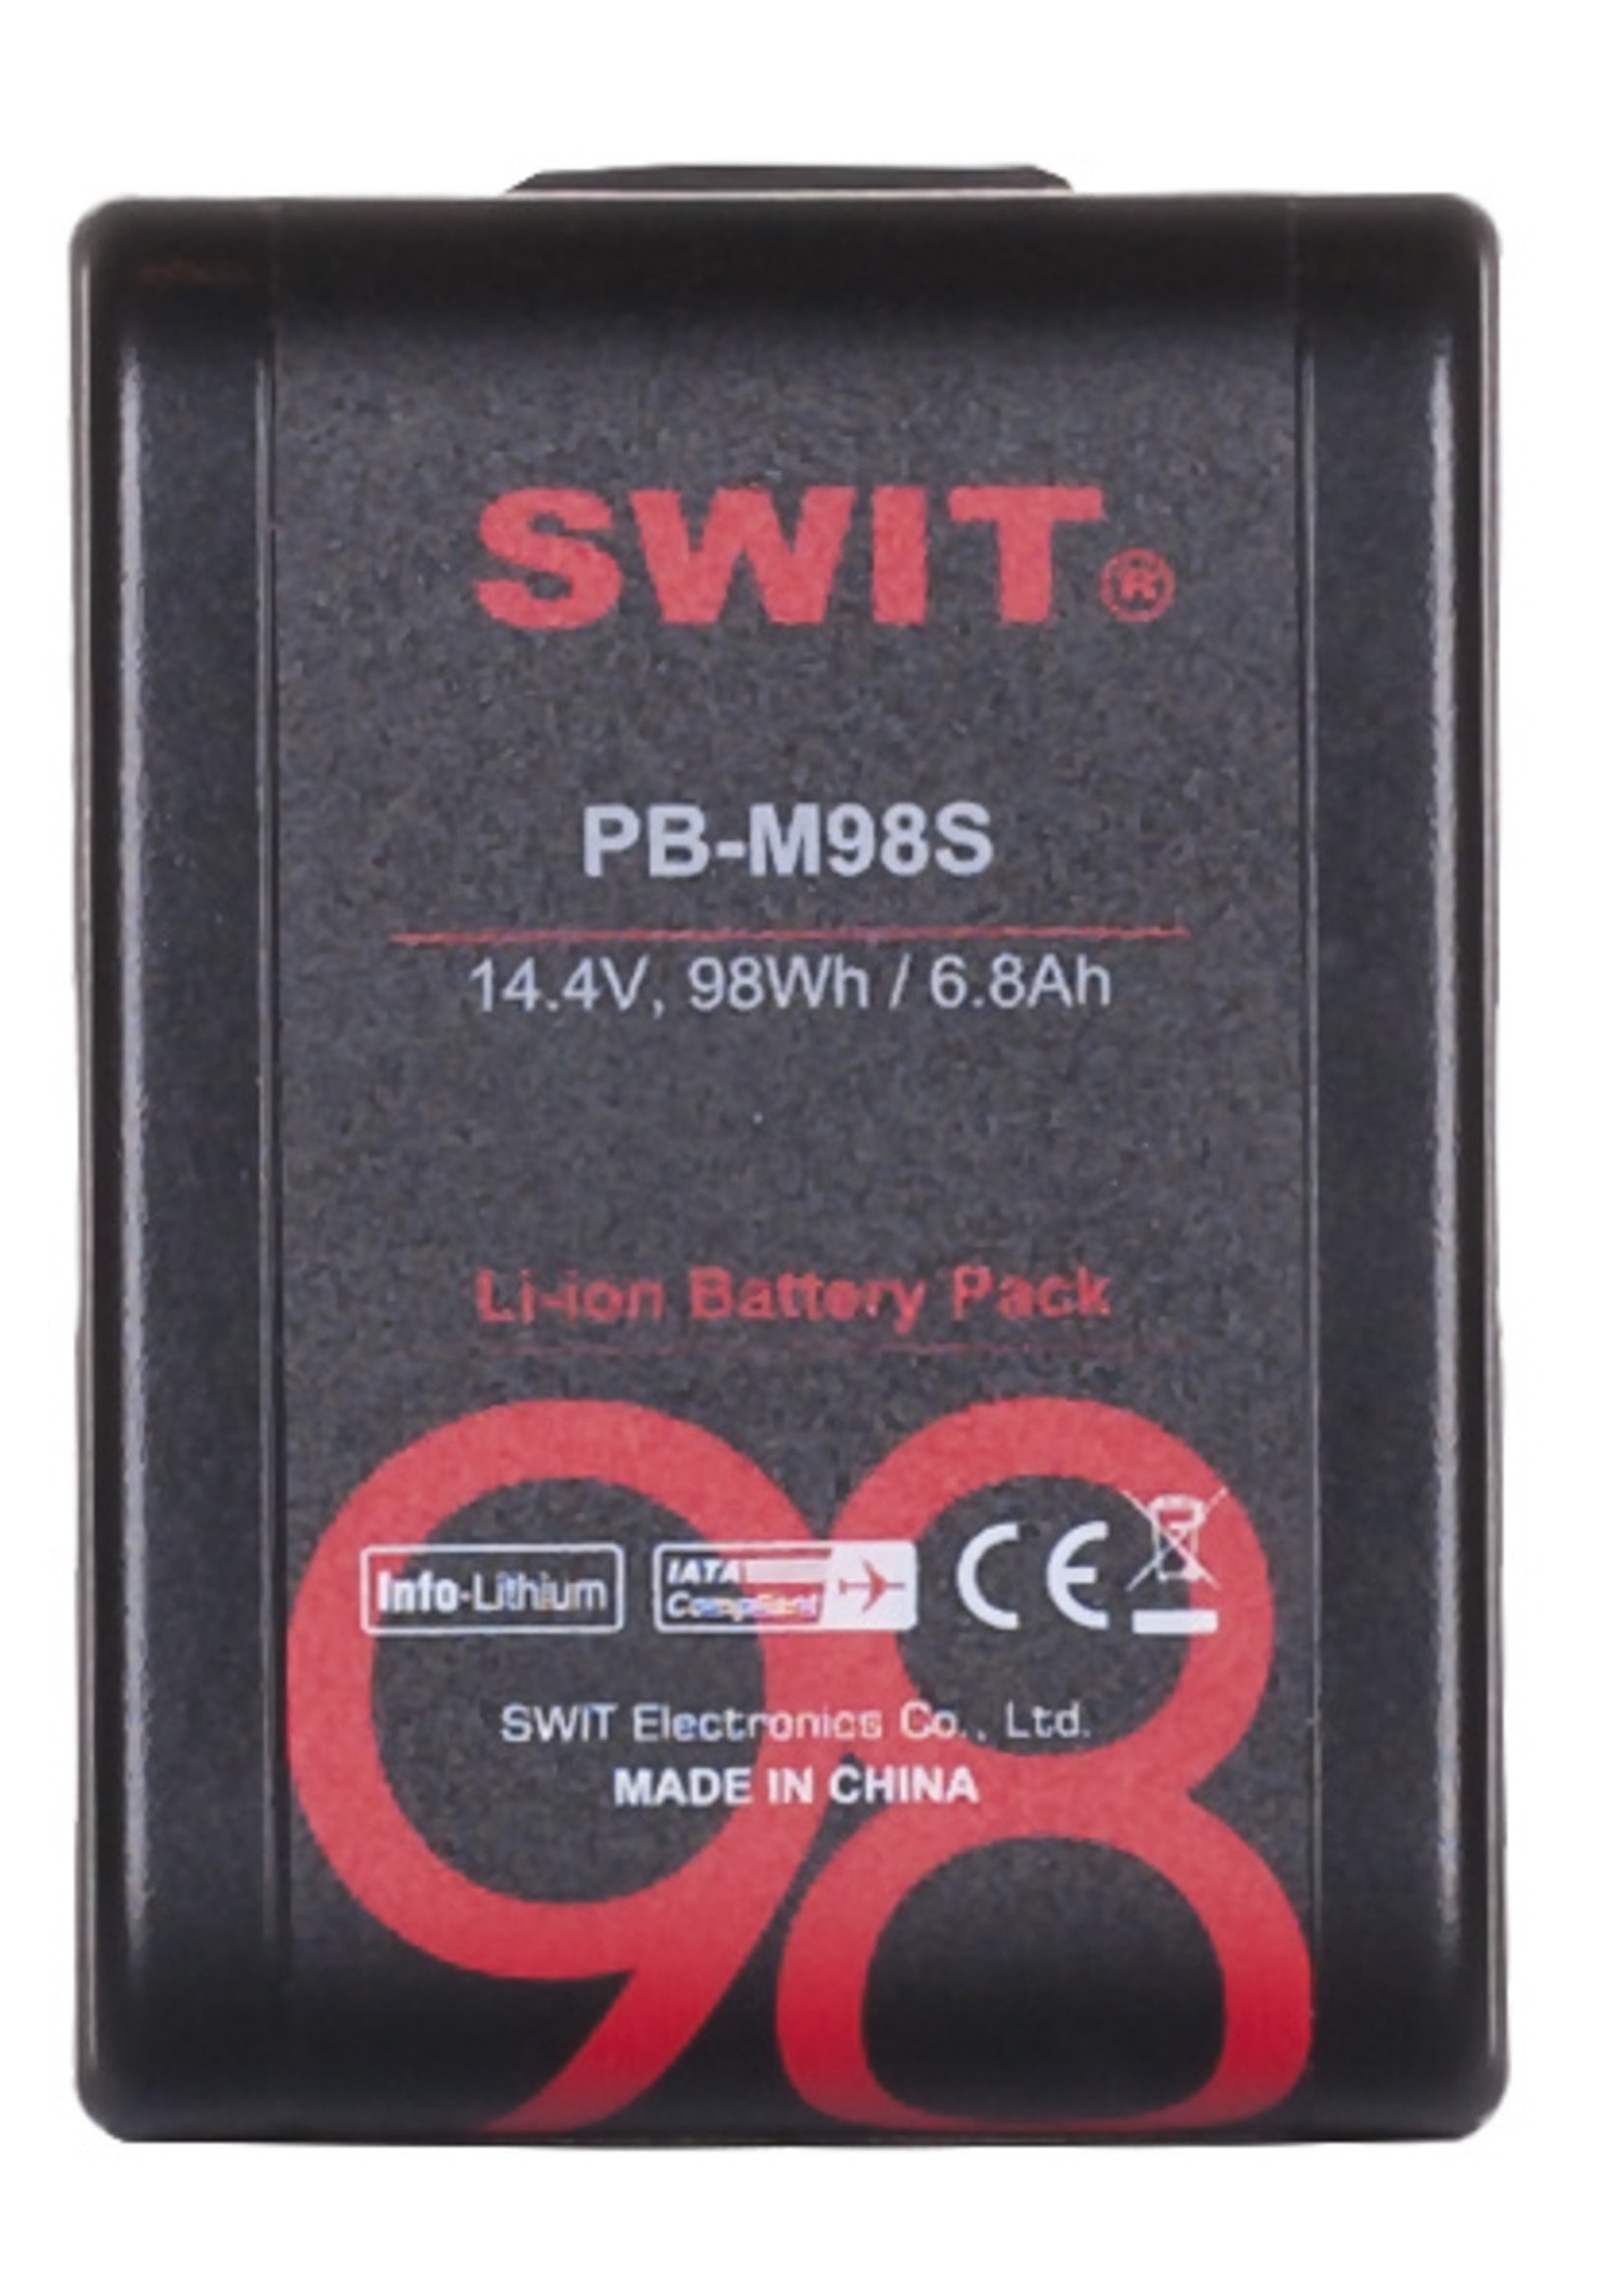 Swit PB-M98S, 98Wh Pocket V-mount Battery Pack